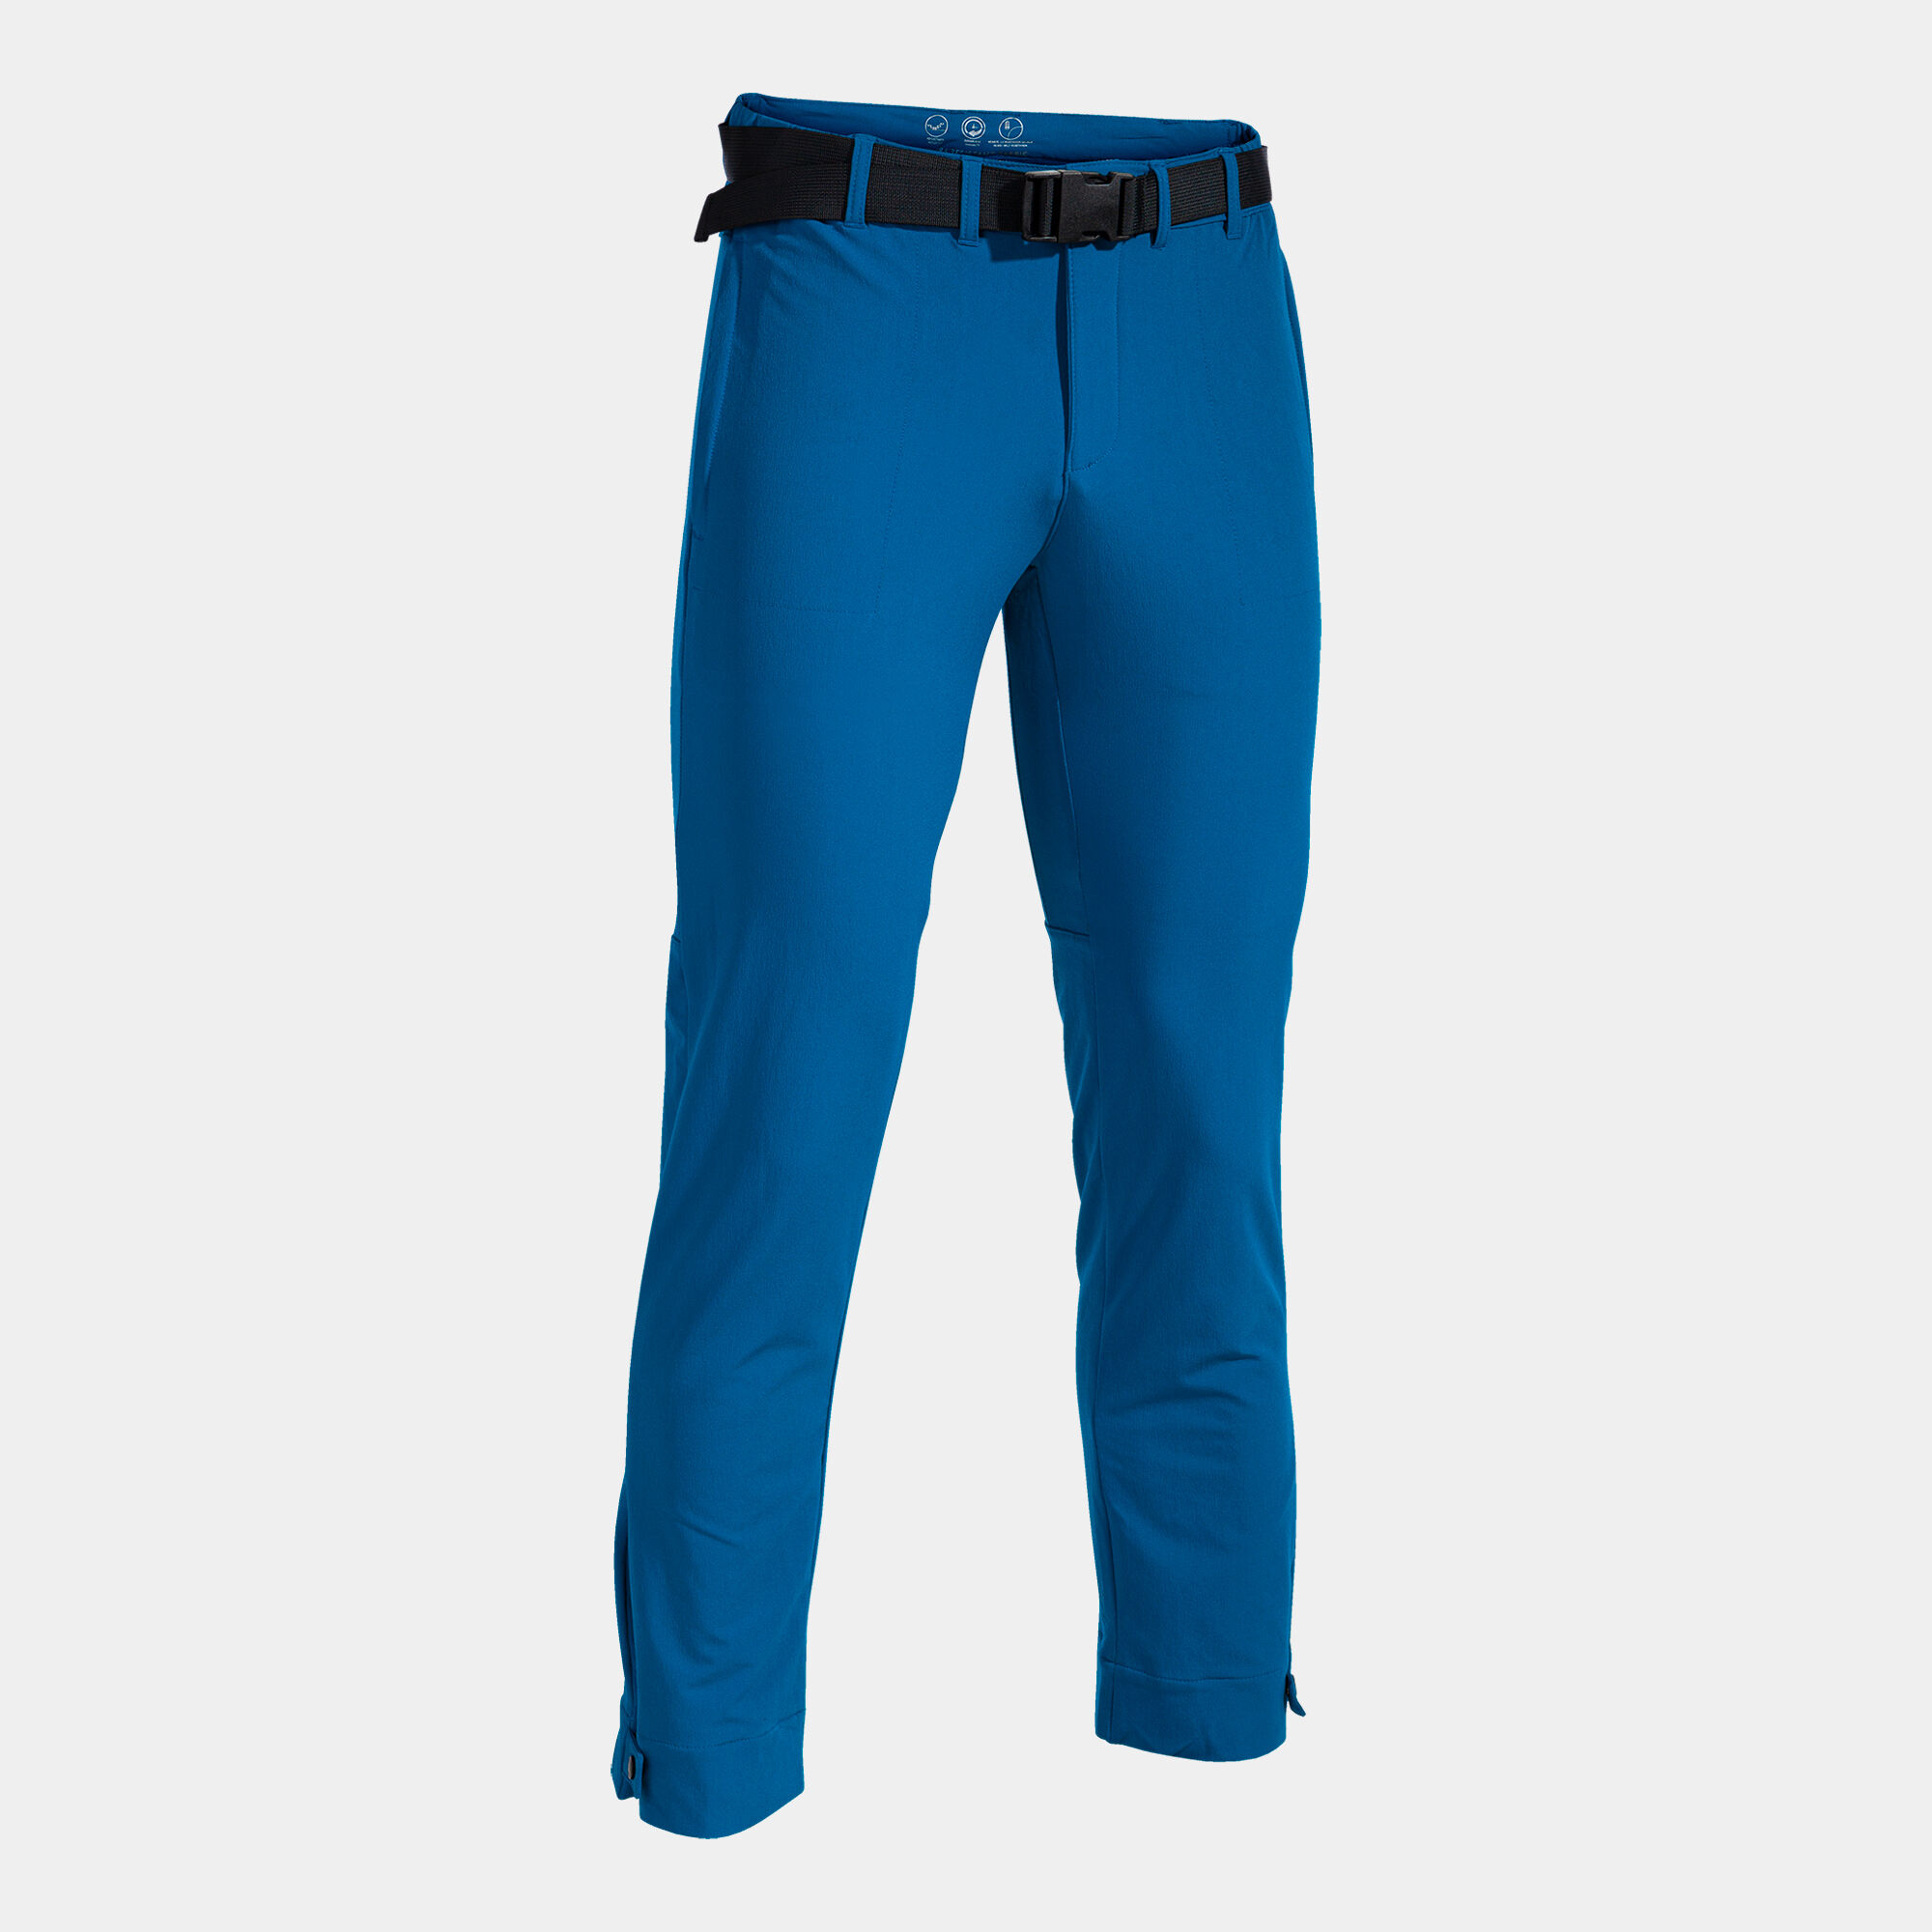 Pantalone lungo uomo Explorer blu